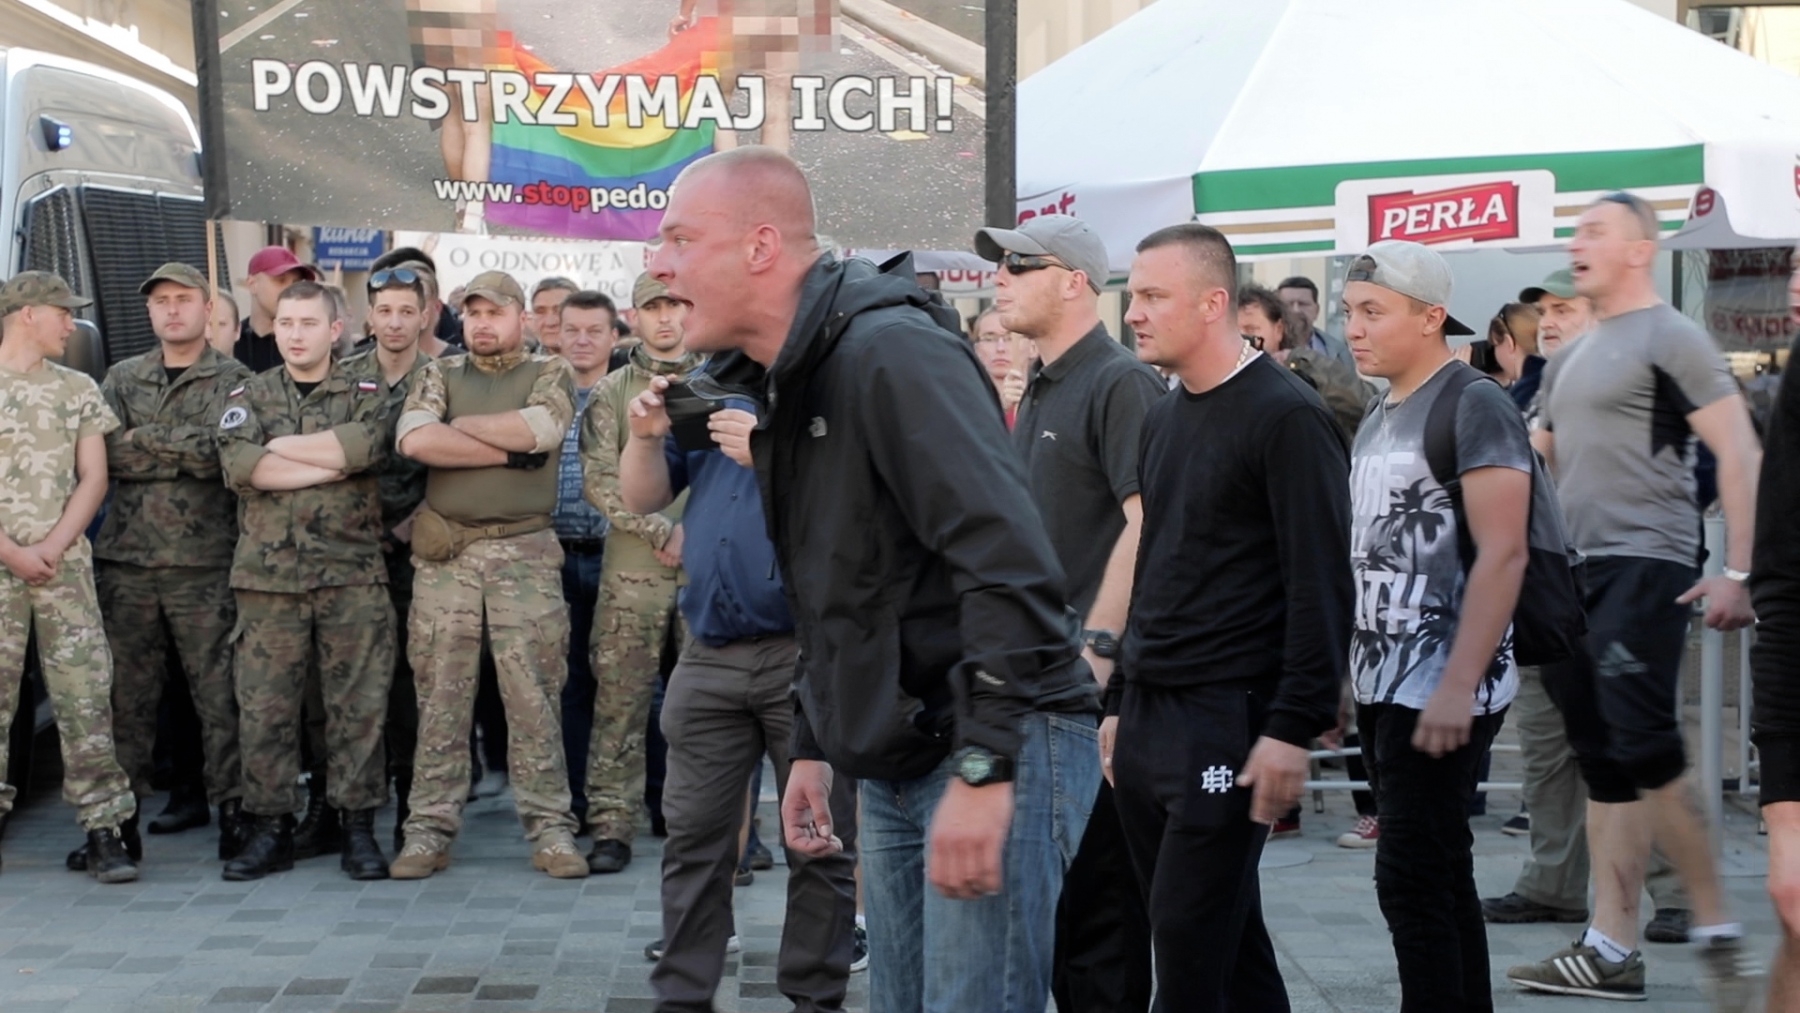 V20 (video): Útok na Dúhový pride v poľskom Lubline